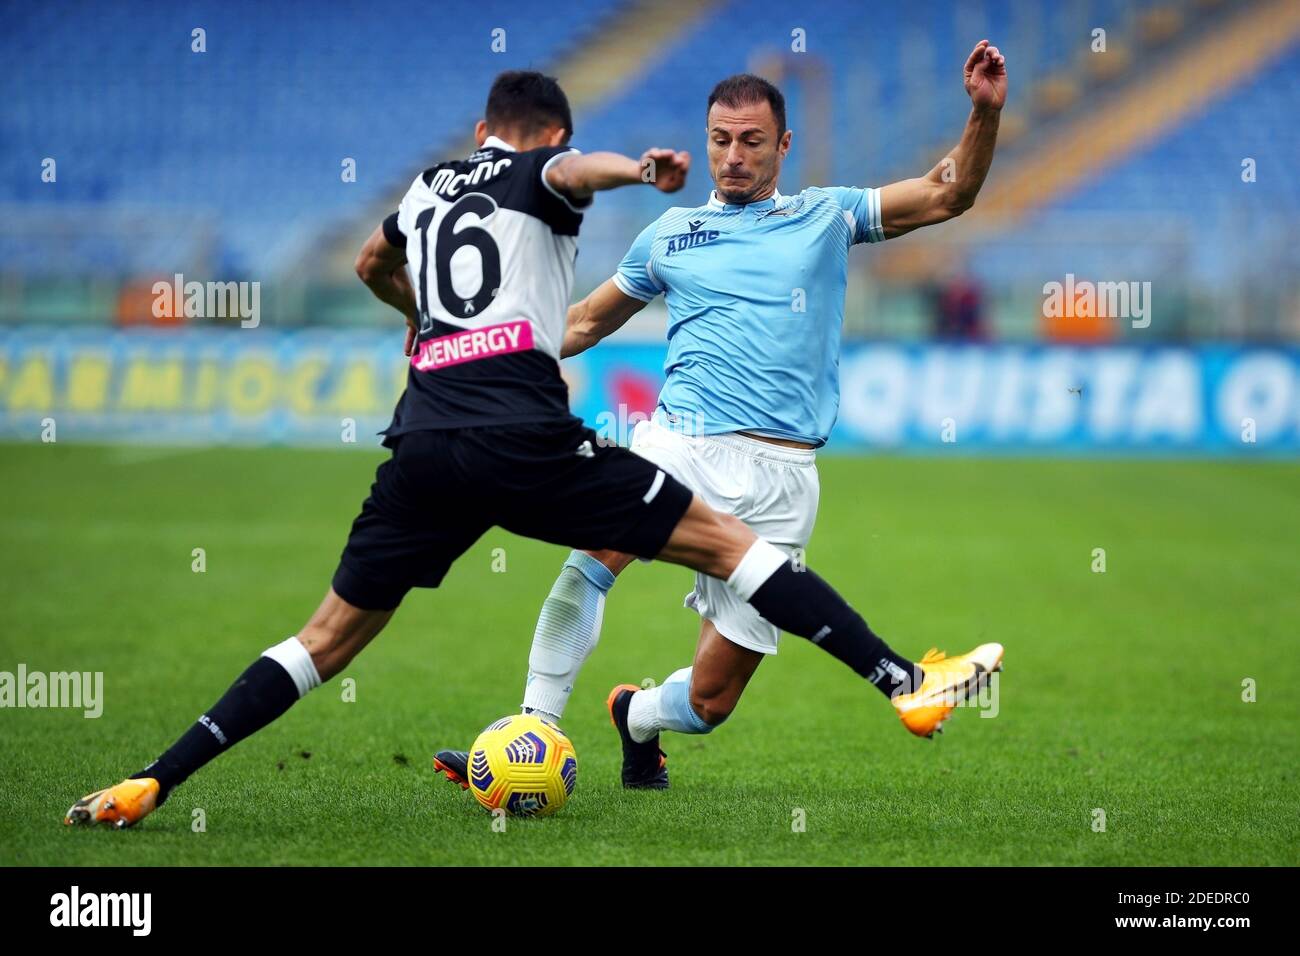 Stefan Radu von Lazio (R) wetteiferte um den Ball mit Nahuel Molina von Udinese während der italienischen Meisterschaft Serie A Fußball m / lm Stockfoto